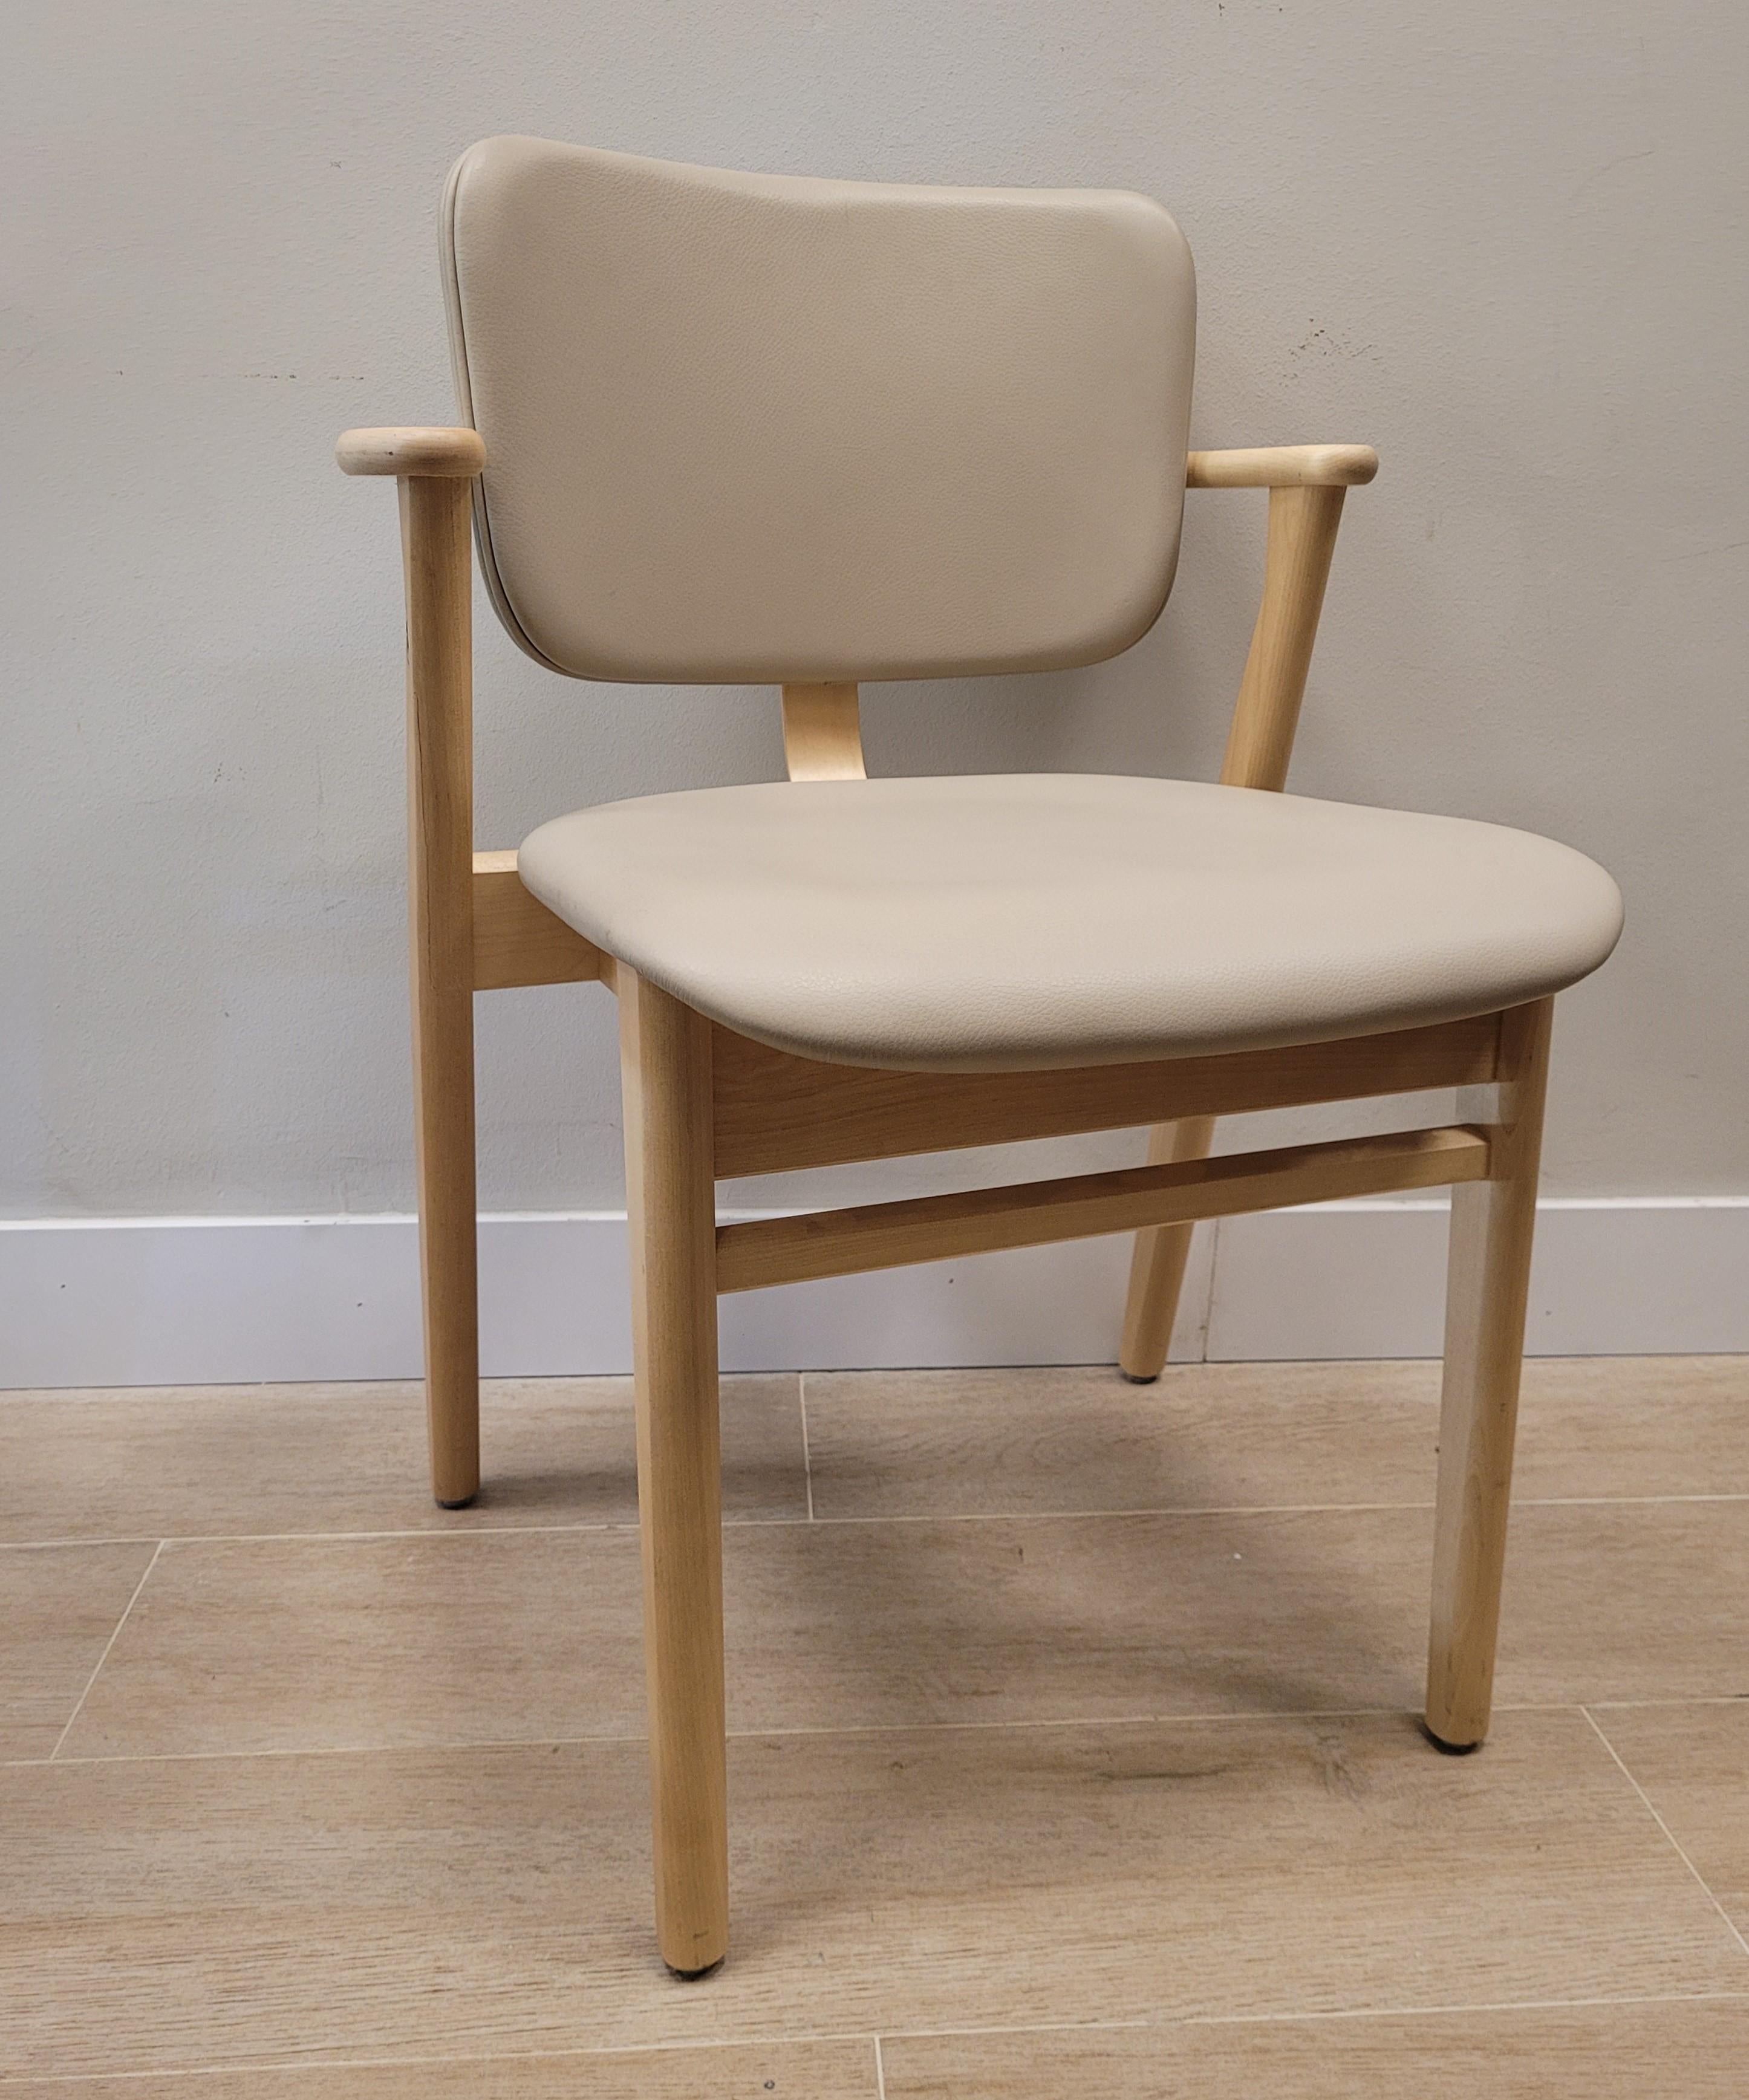  Finnish   Grey beige  chair  by Ilmari Domus beige leather Birch wood In Good Condition For Sale In Valladolid, ES